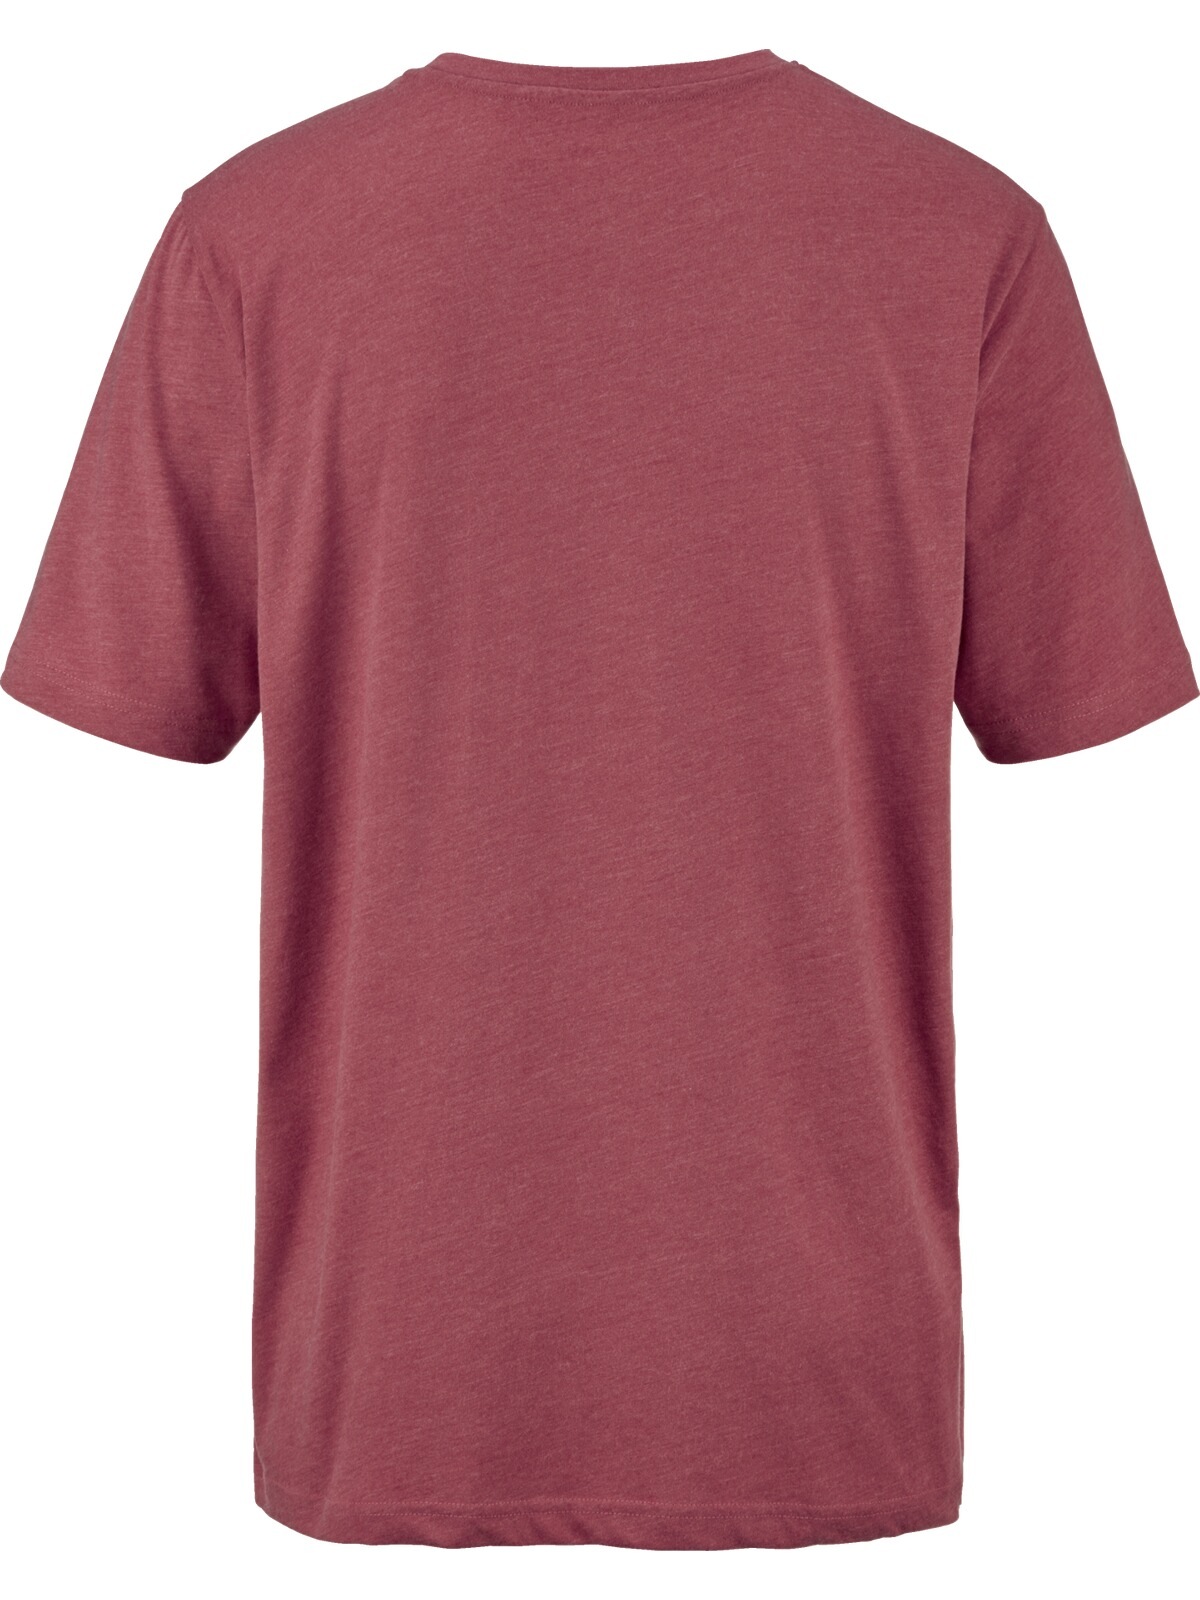 Babista Rundhalsshirt »T-Shirt ULVIENTO«, (1 tlg.), mit melierter Optik